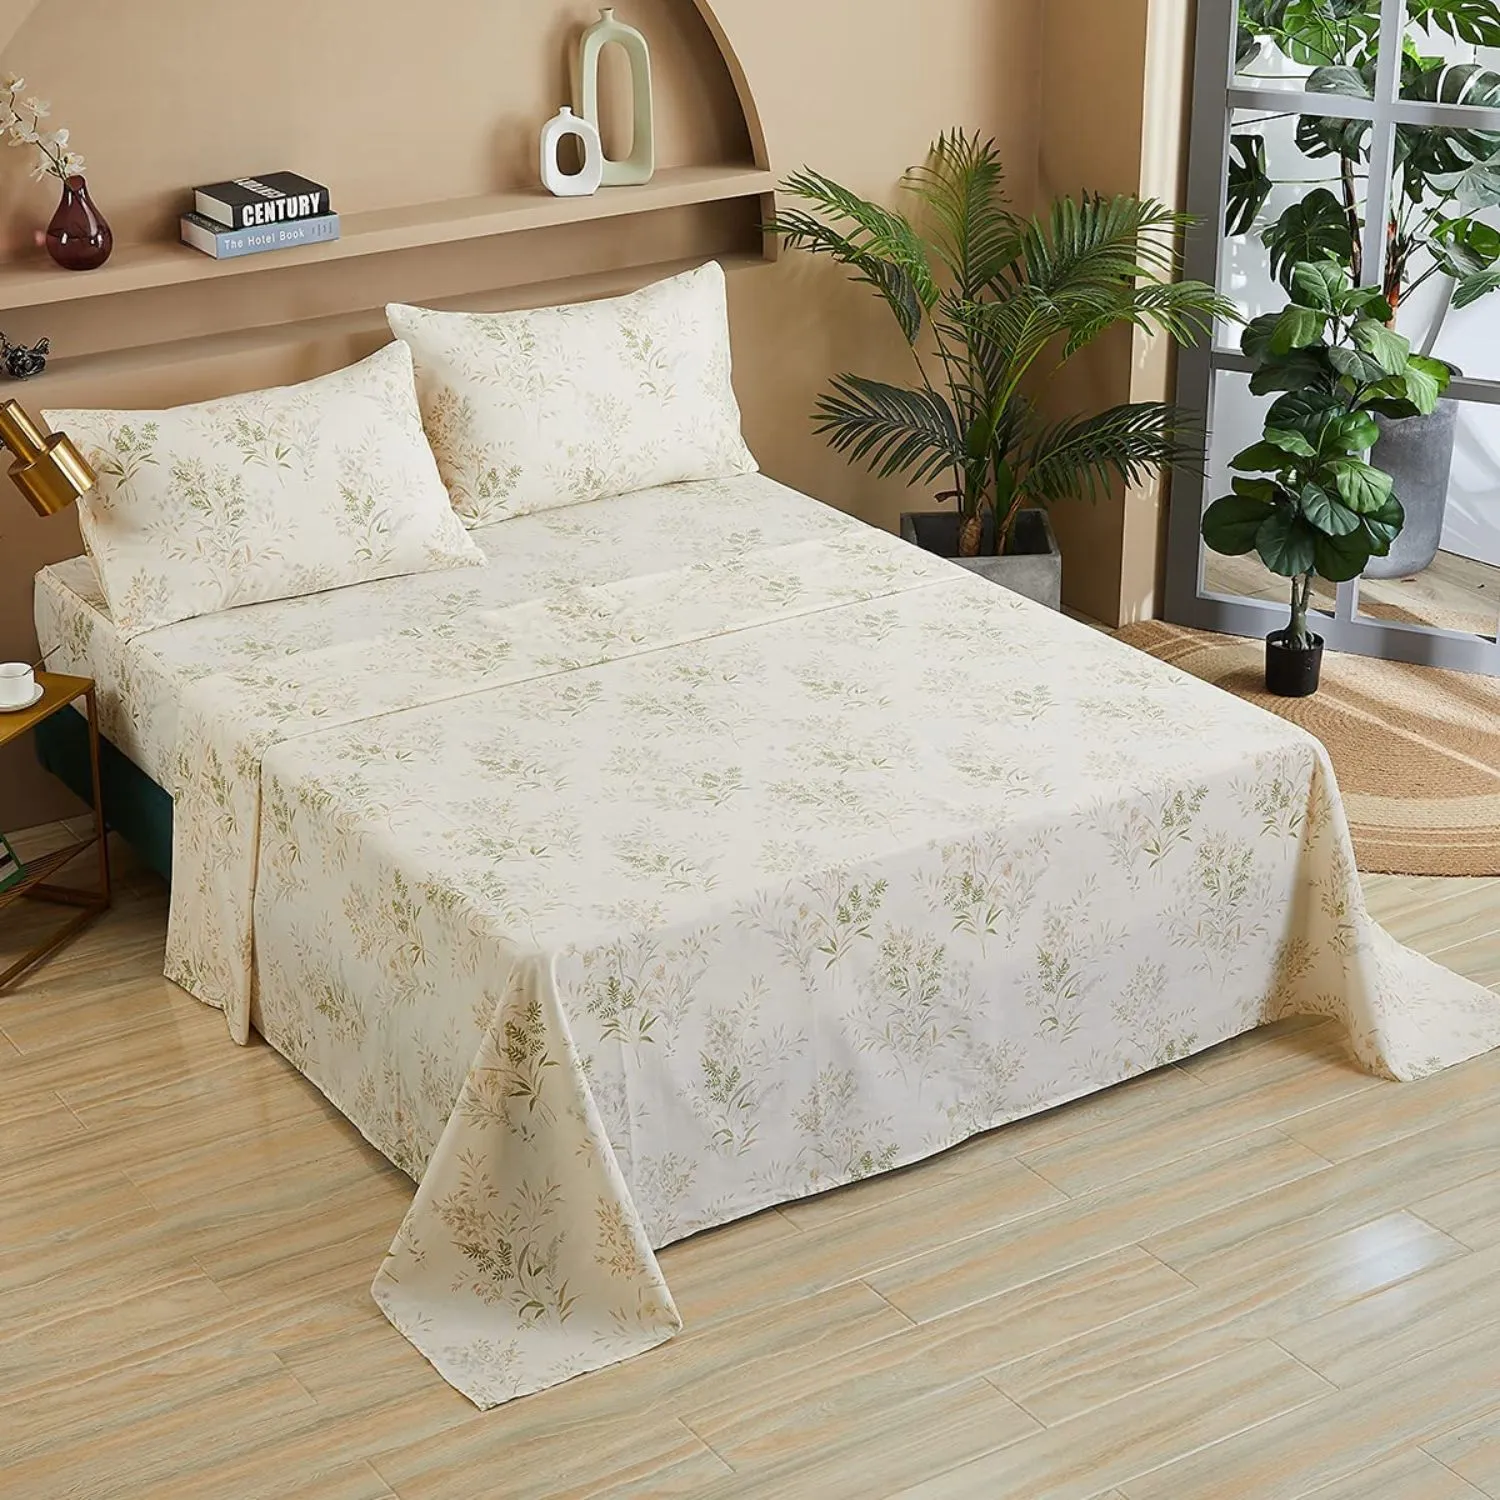 Floral Bed Sheet